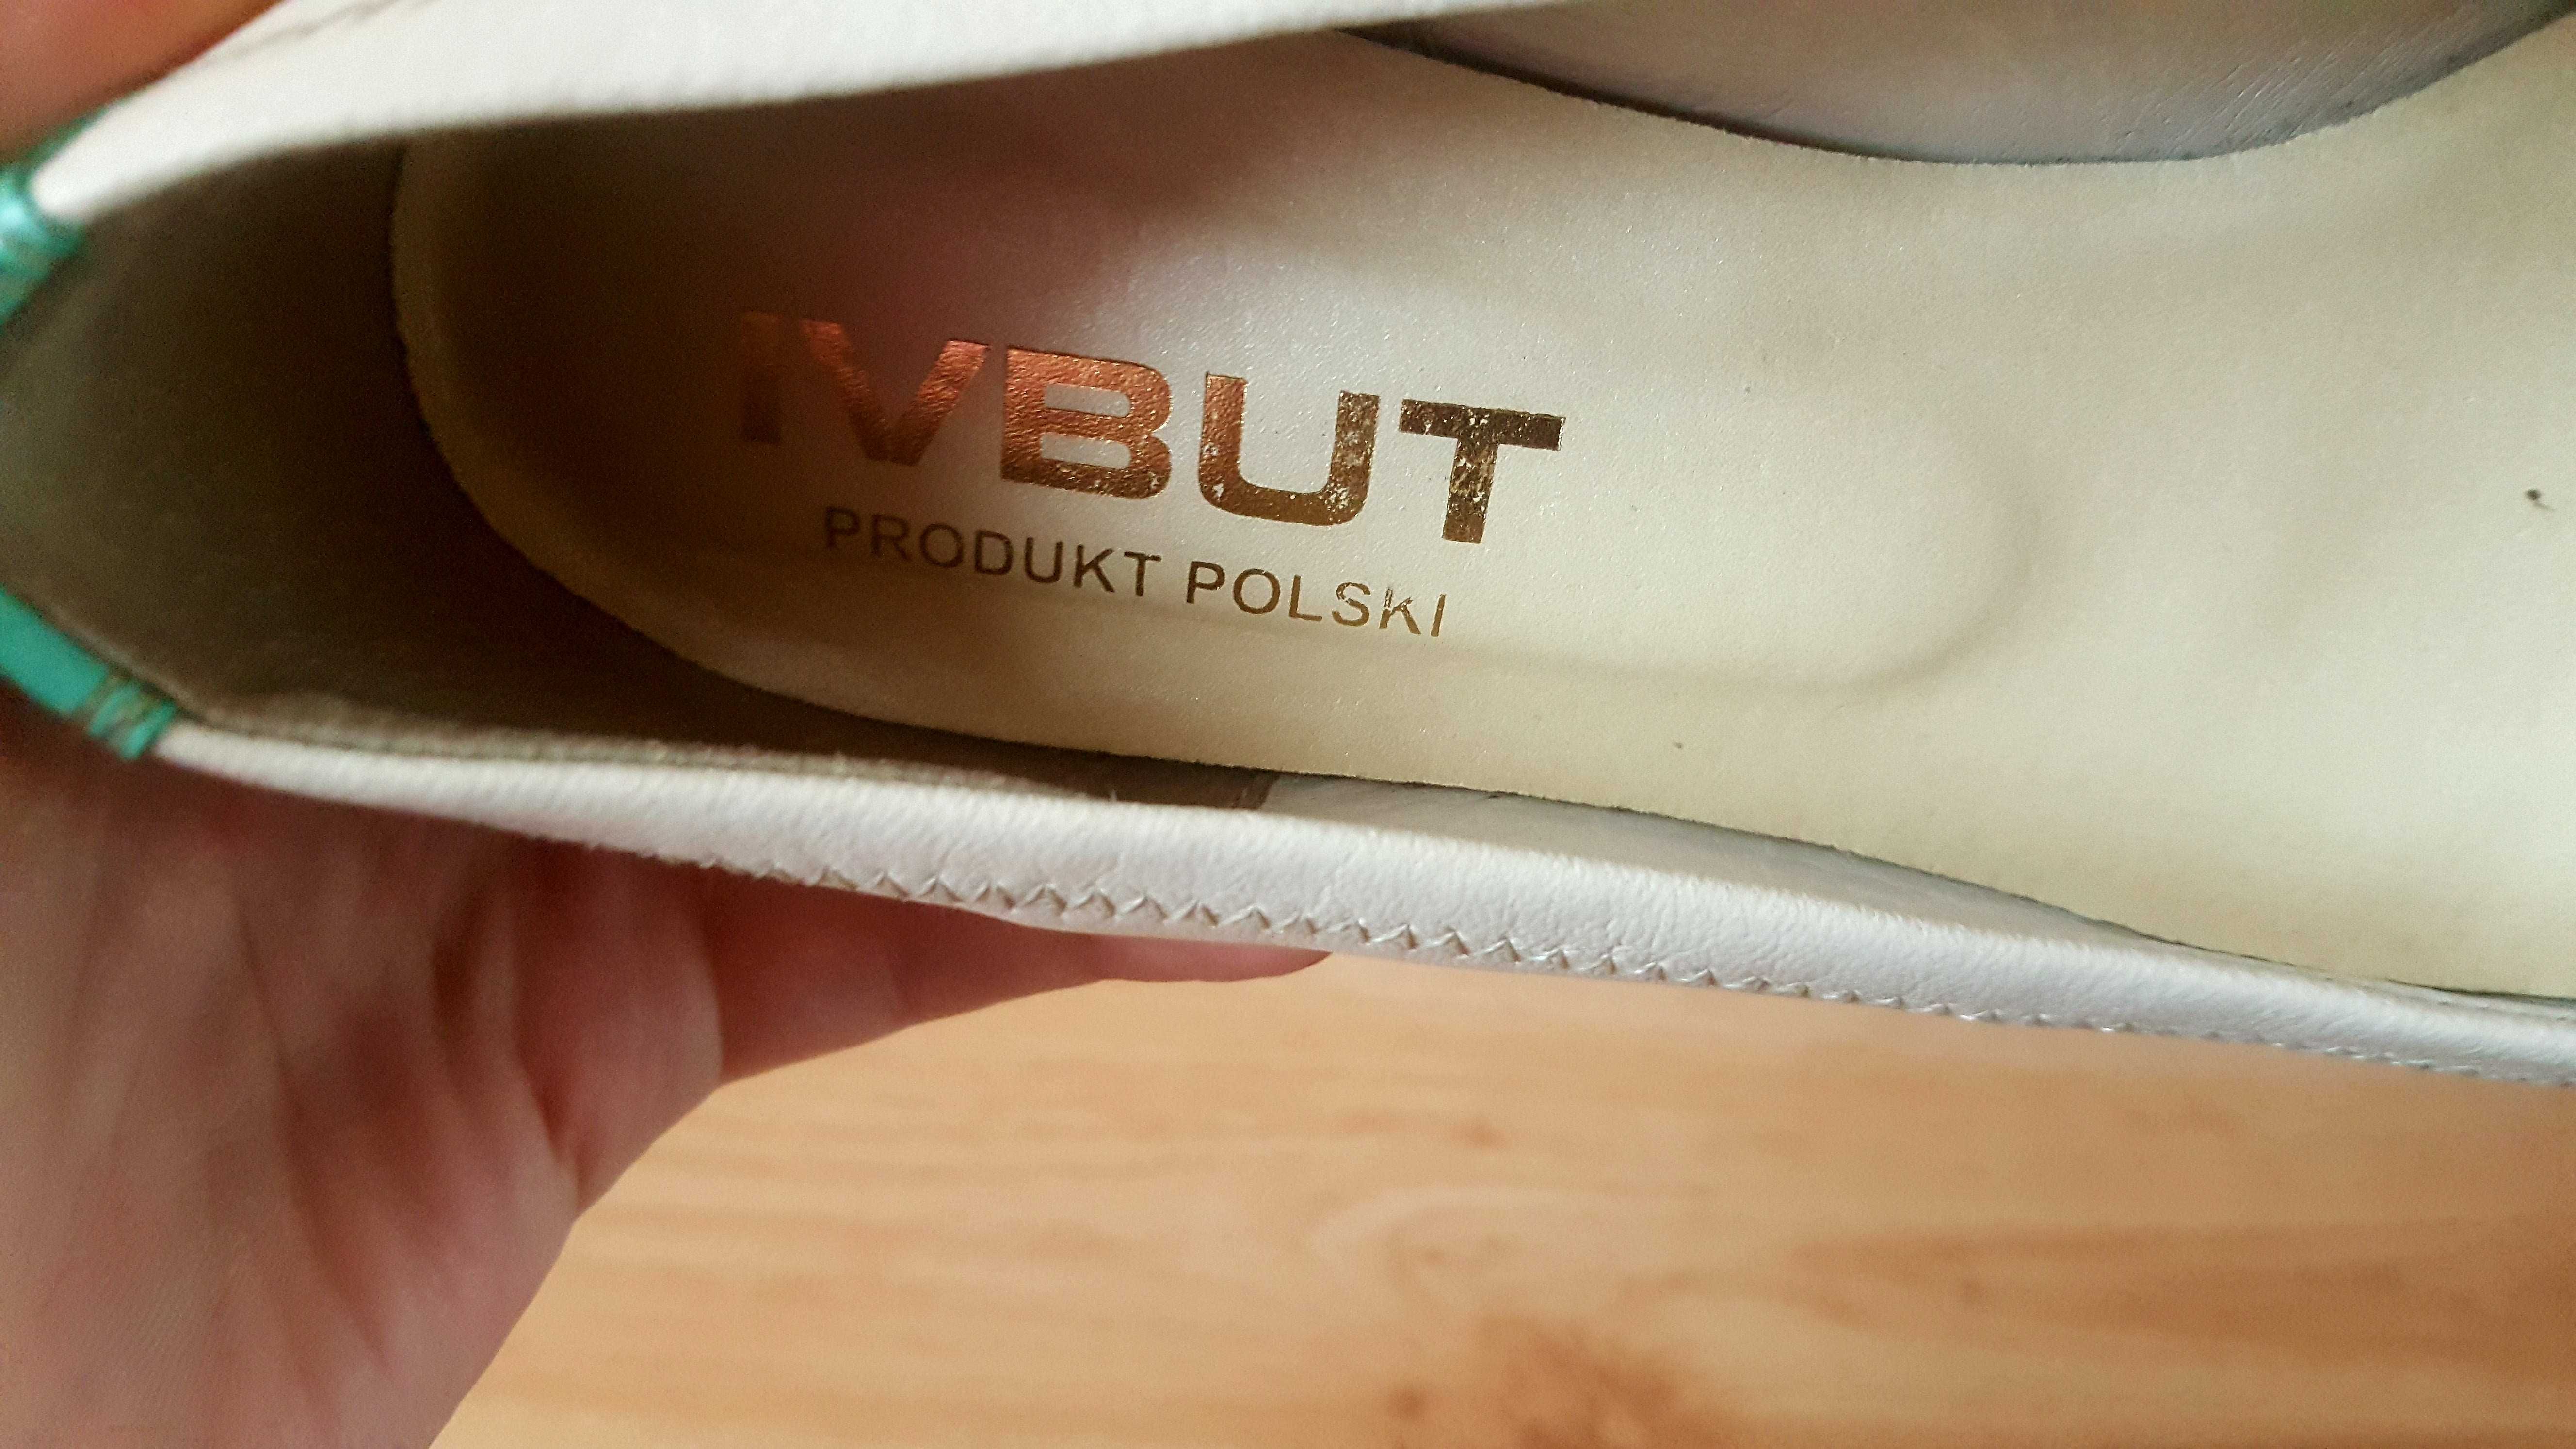 Buty polskiego Producenta